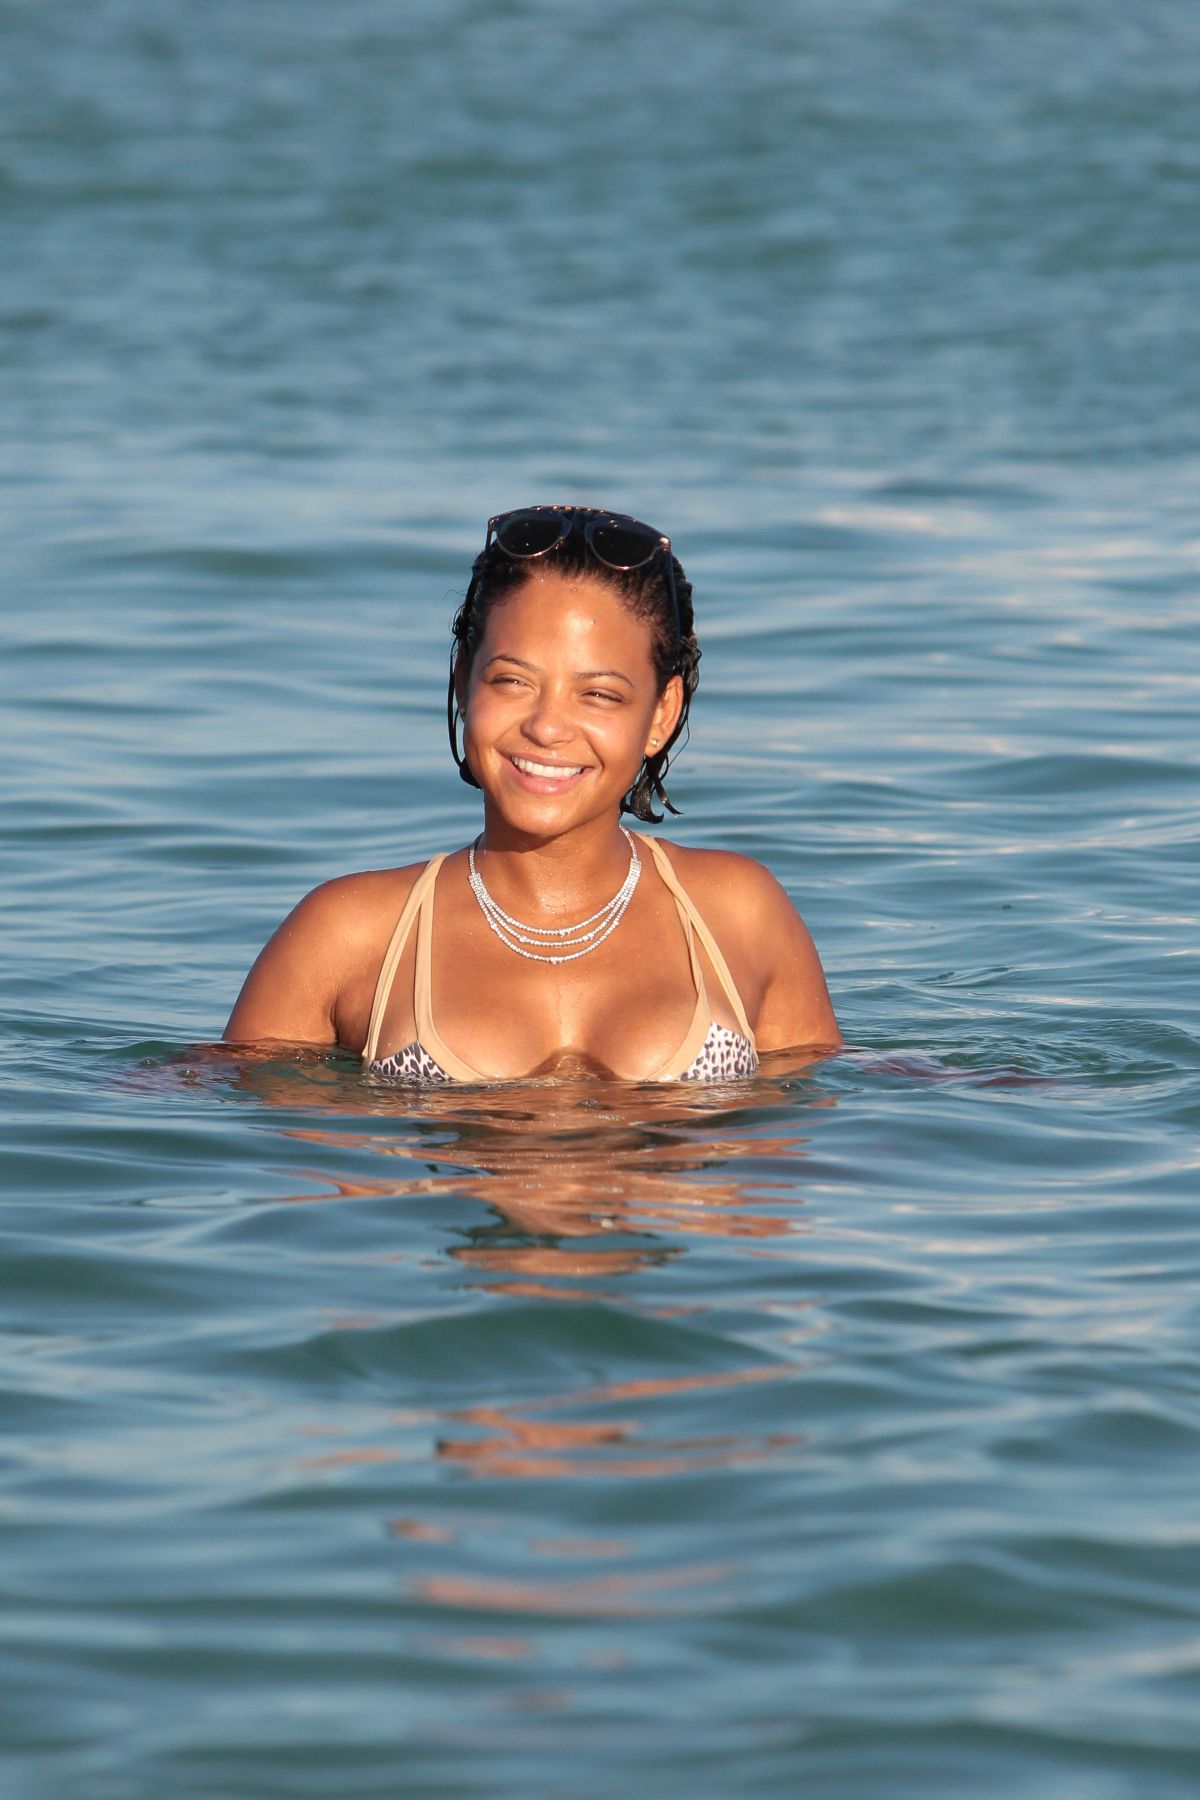 christina-milian-in-bikini-at-a-pool-in-miami-10-04-2015_19.jpg